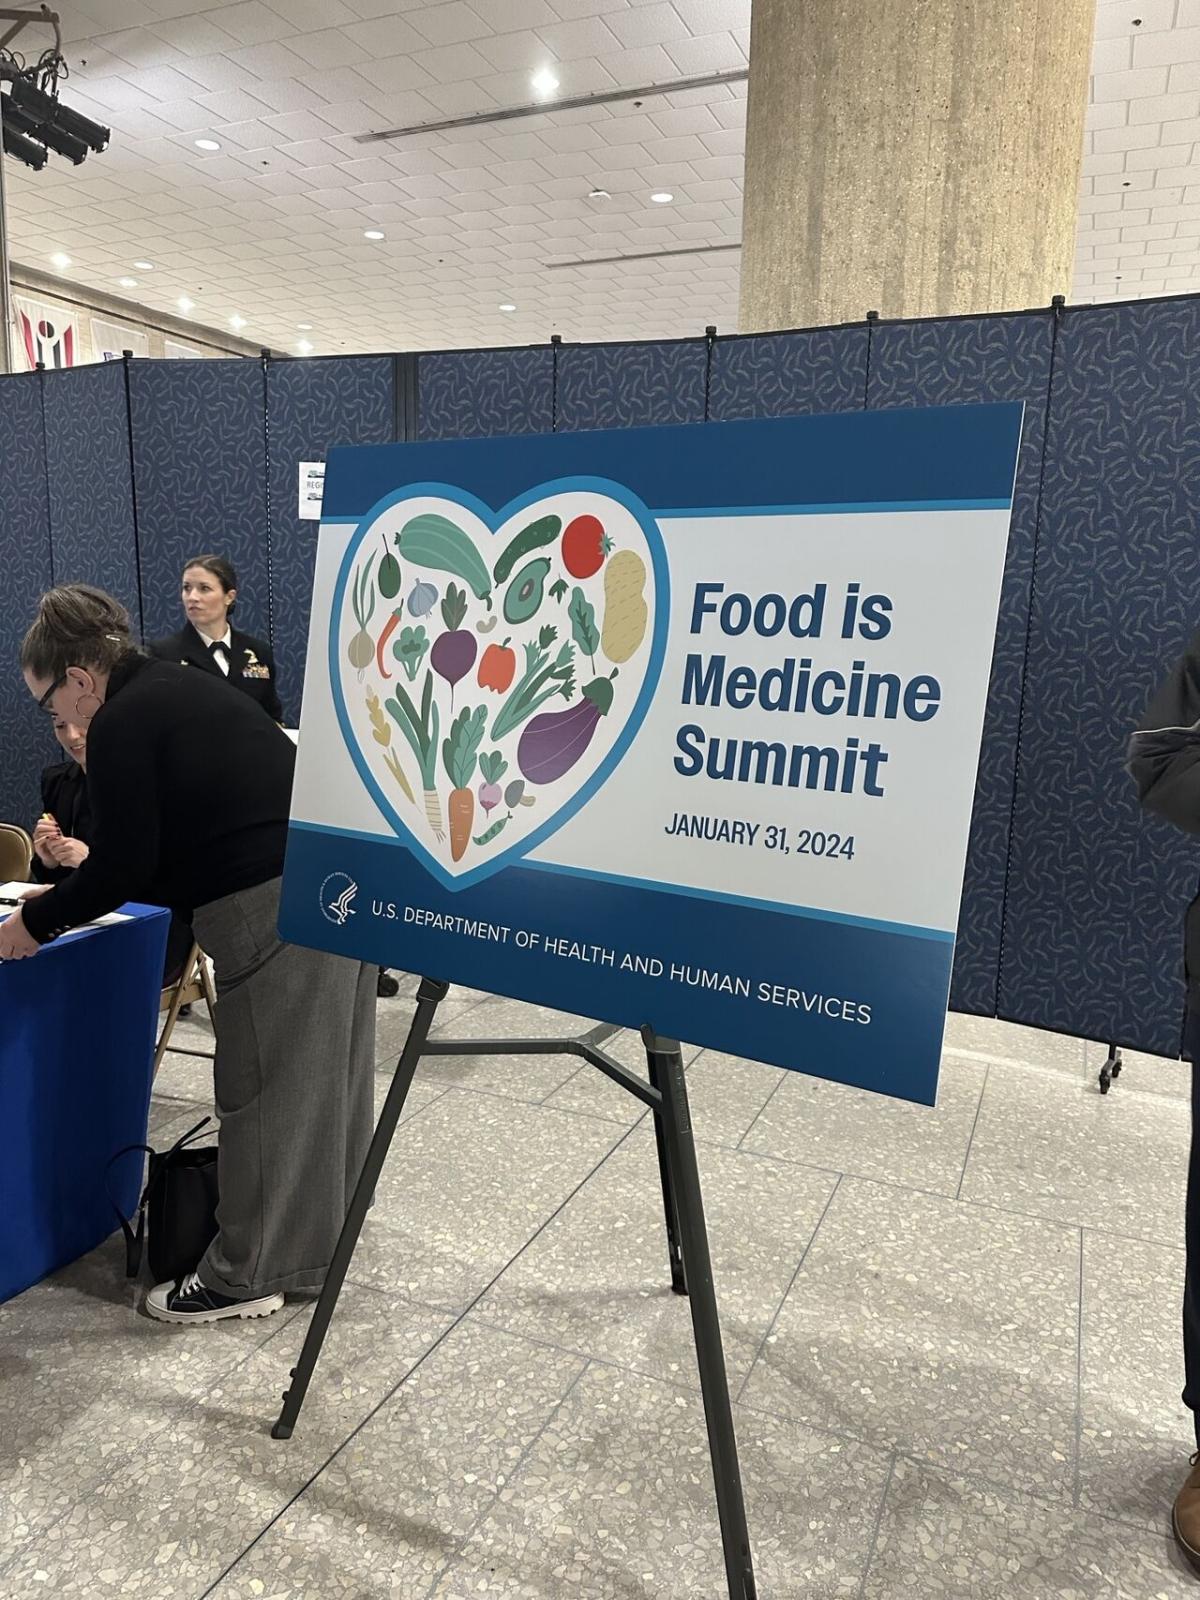 A board on display "Food is Medicine Summit"